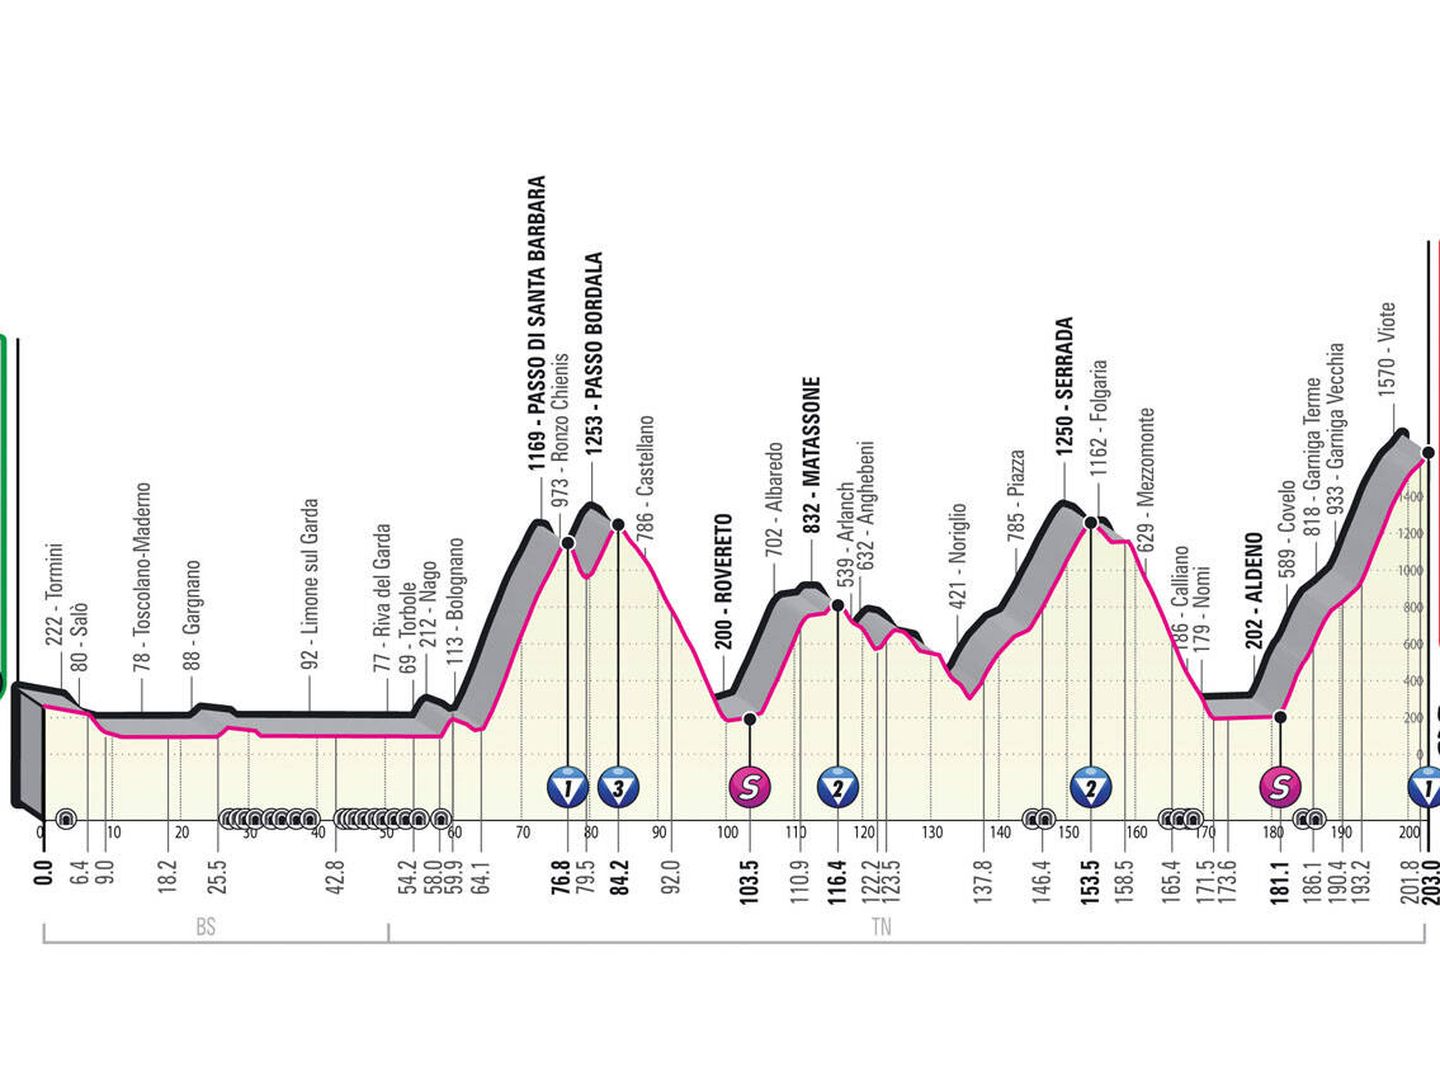 Perfil de la etapa 16 (Giro de Italia)